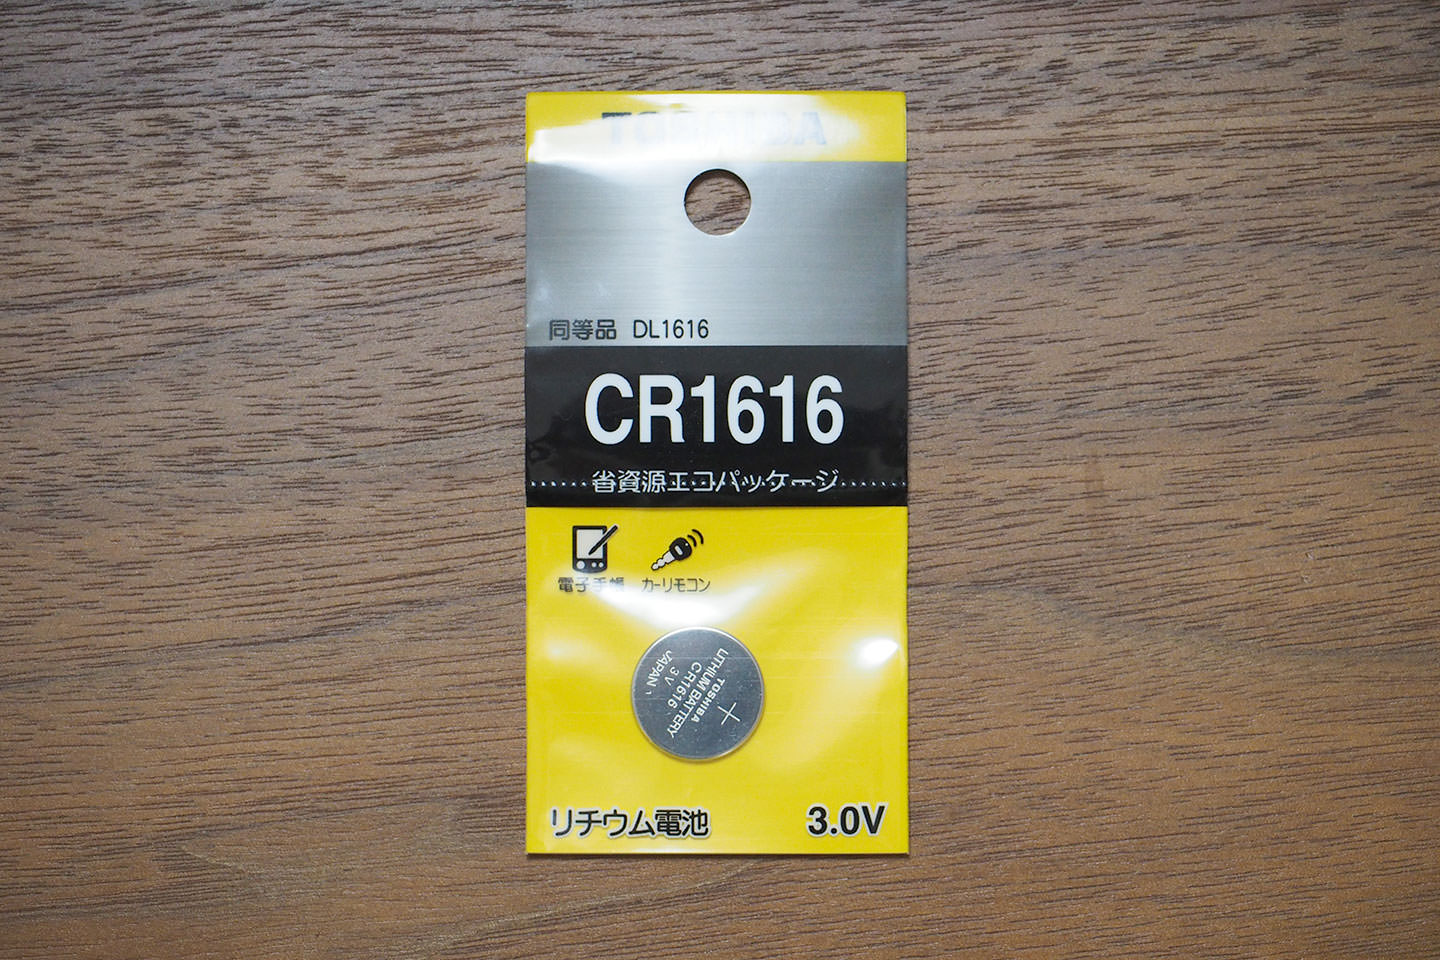 使用する電池はボタン型（コイン型）のCR1616